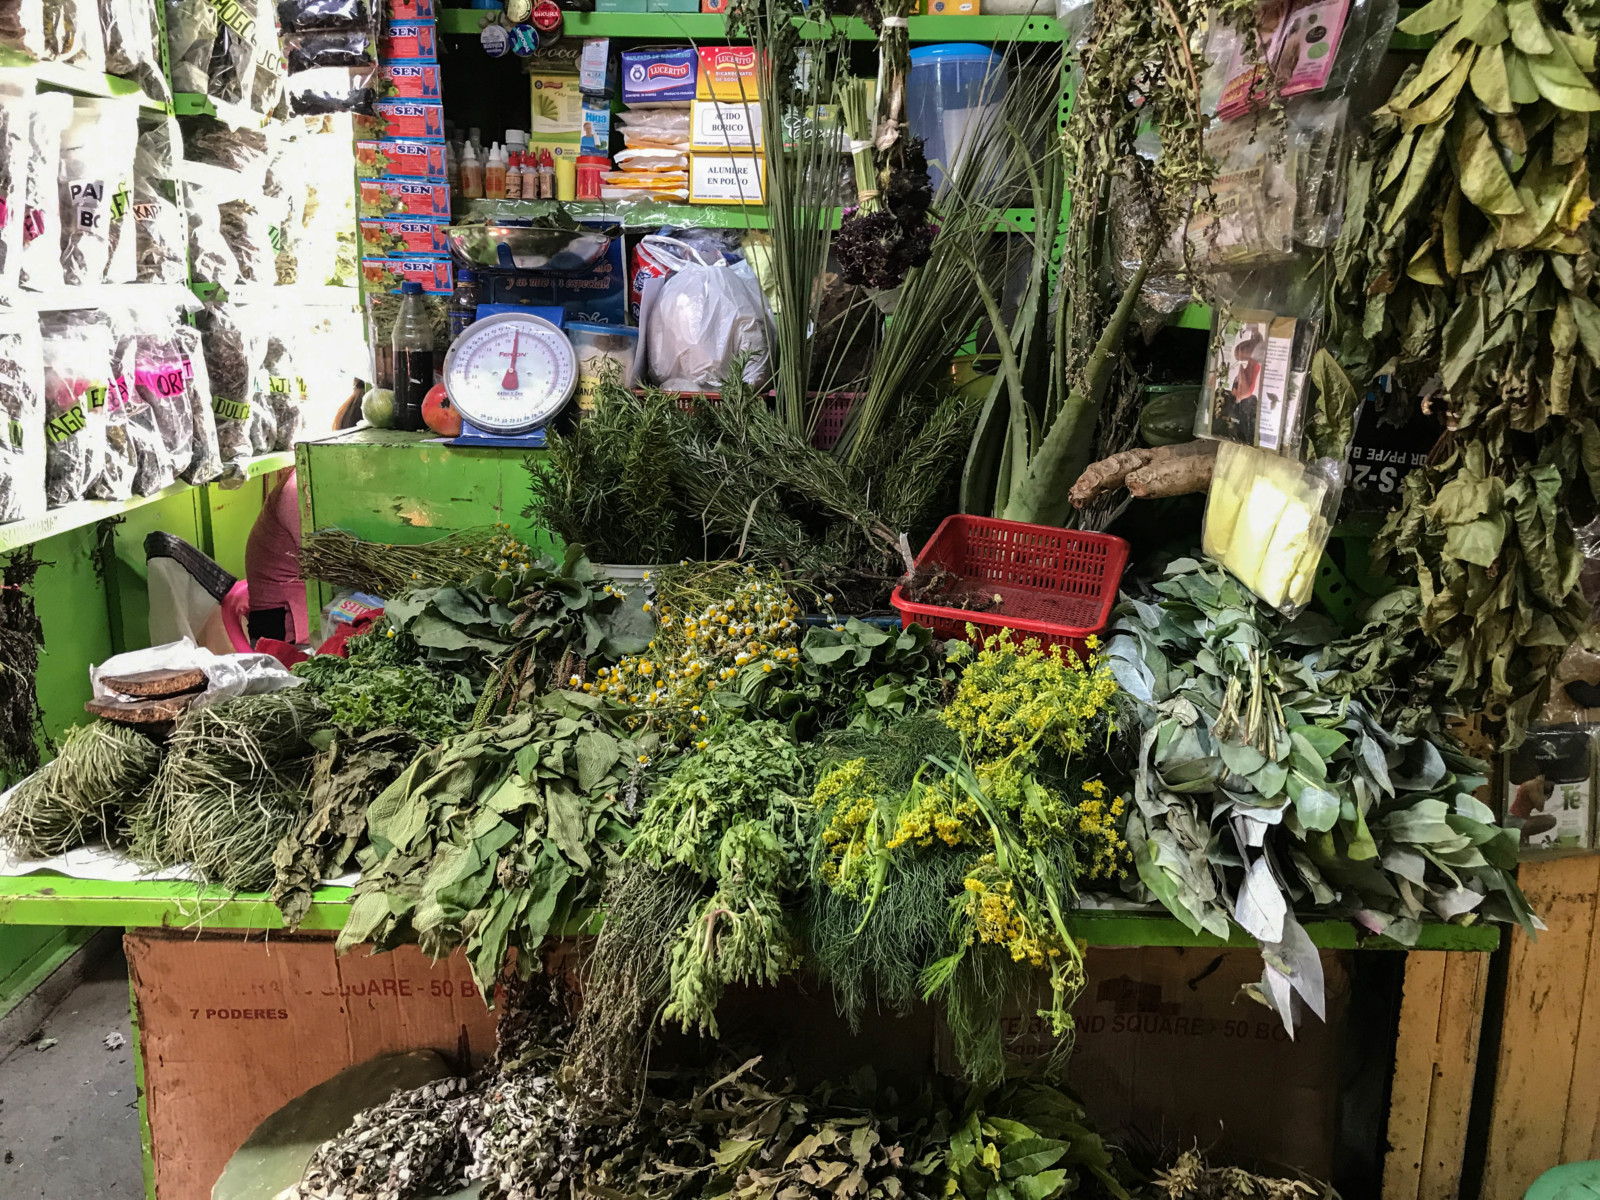 Herbs at mercado de brujas in Peru